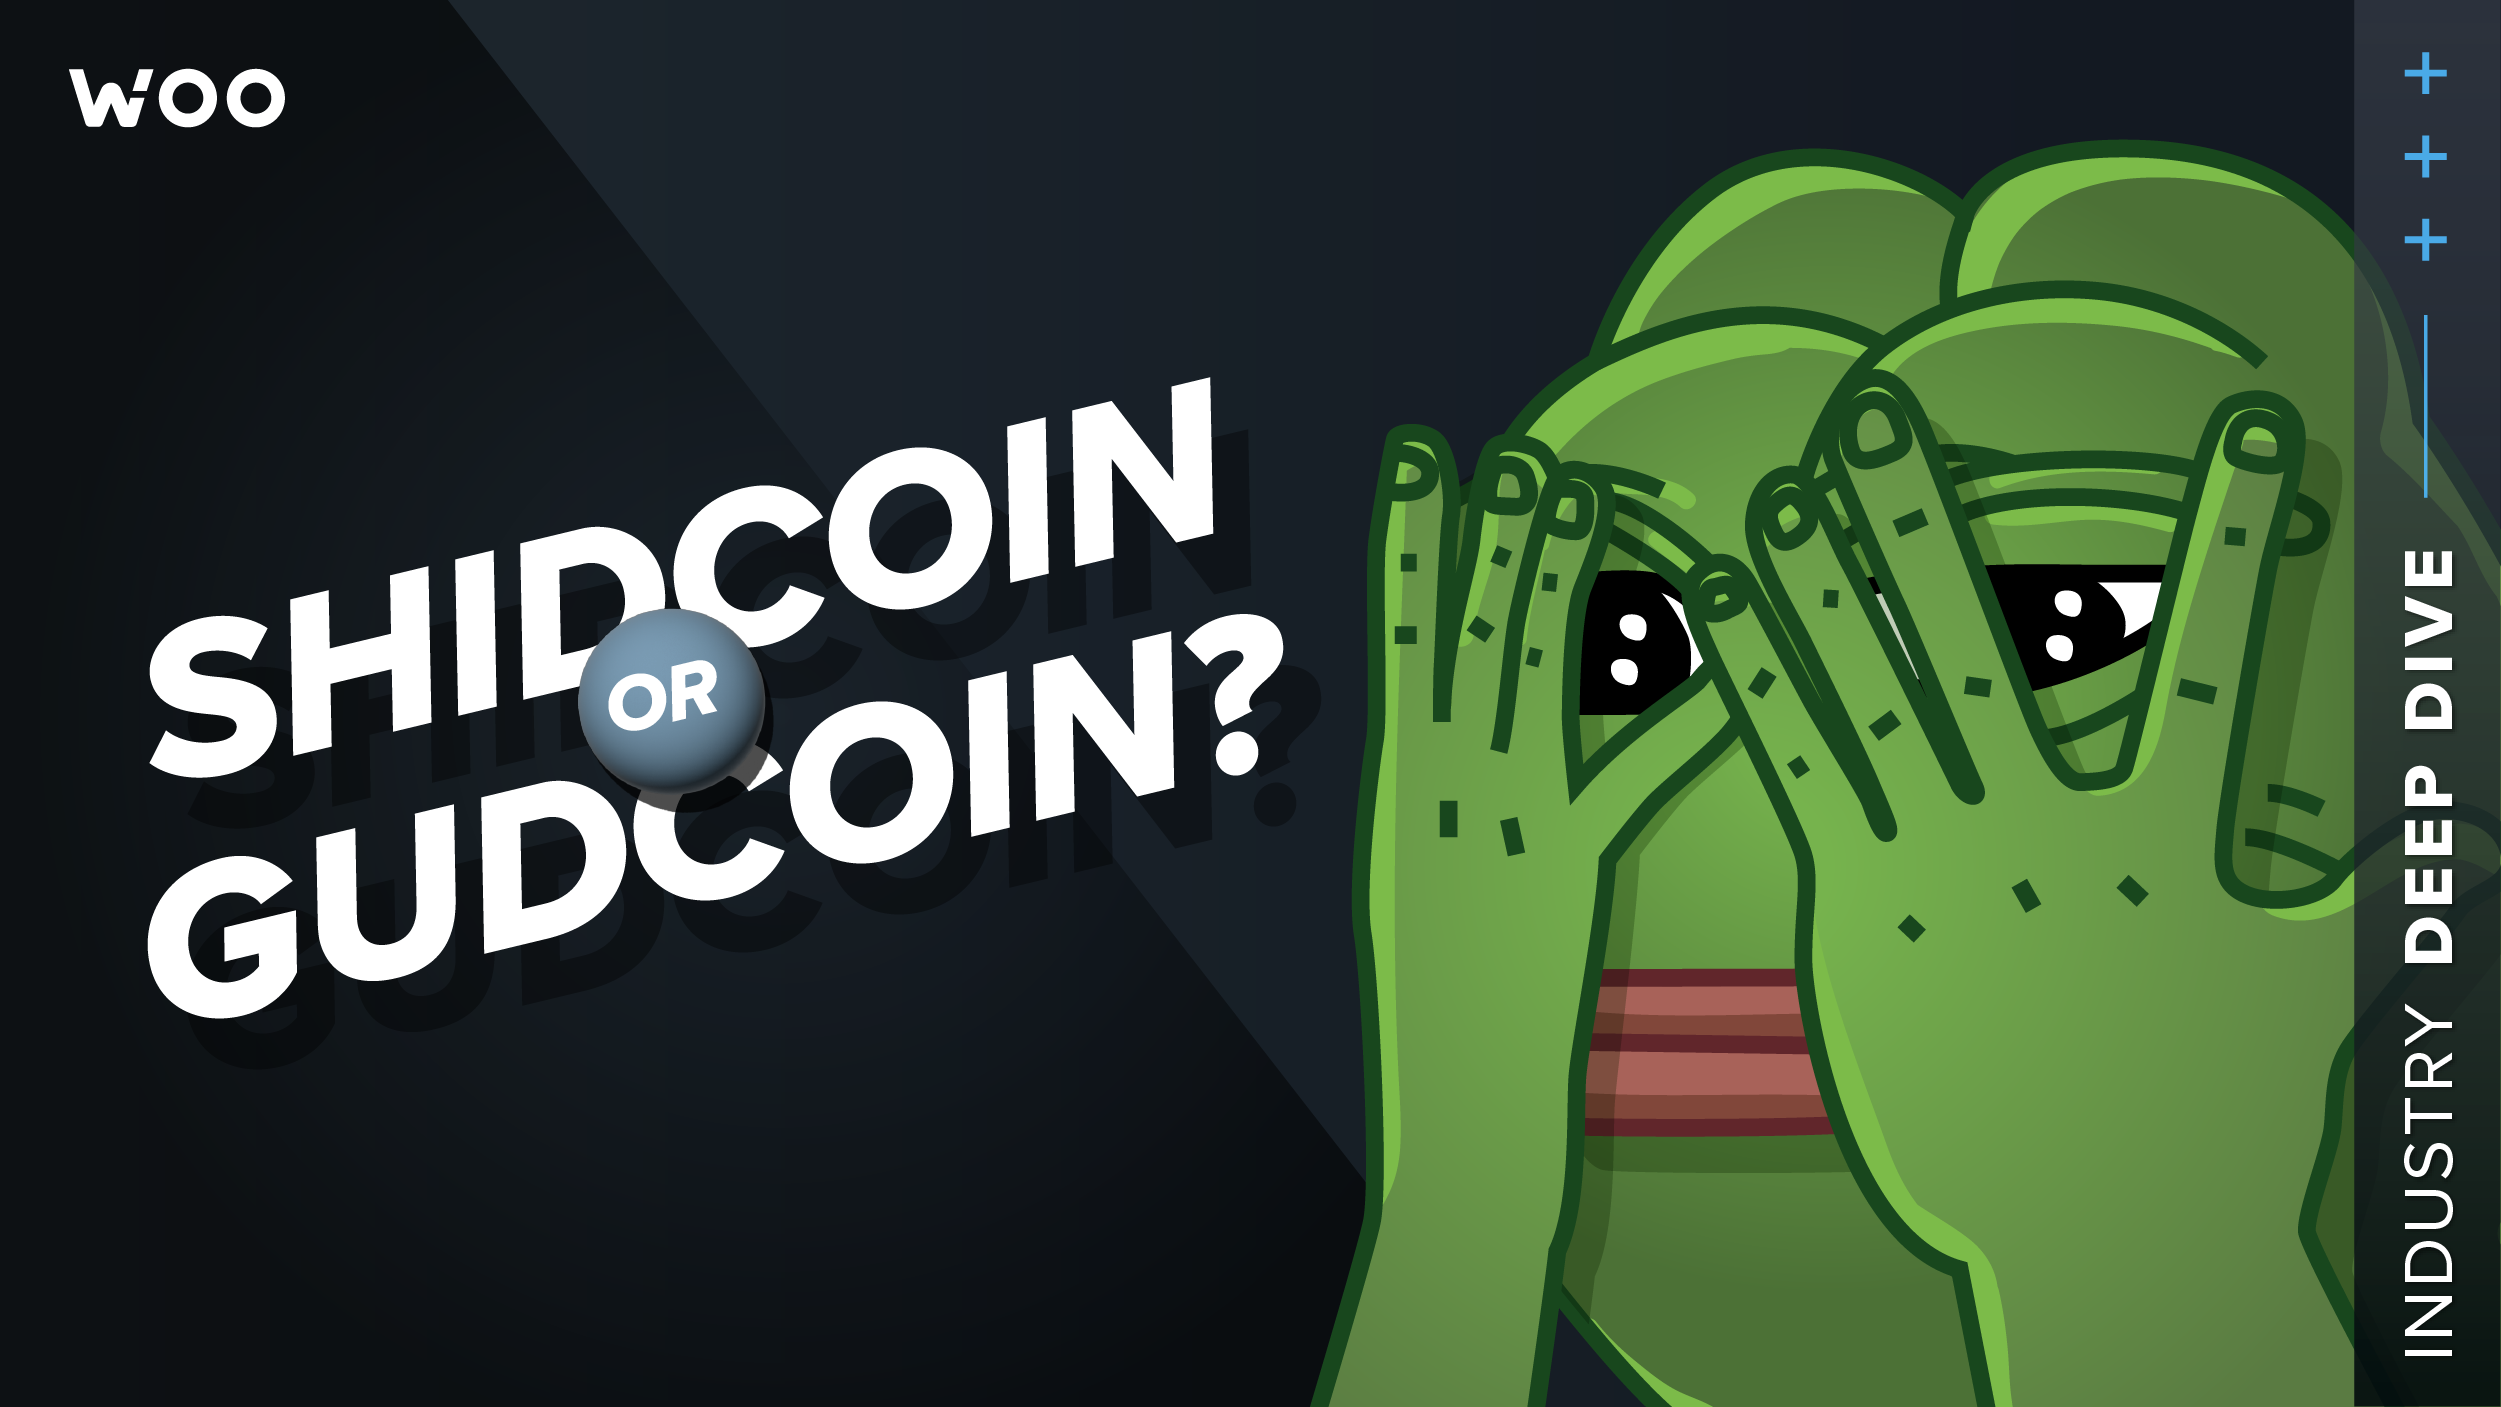 Toncoin (TON): Shidcoin or gudcoin?